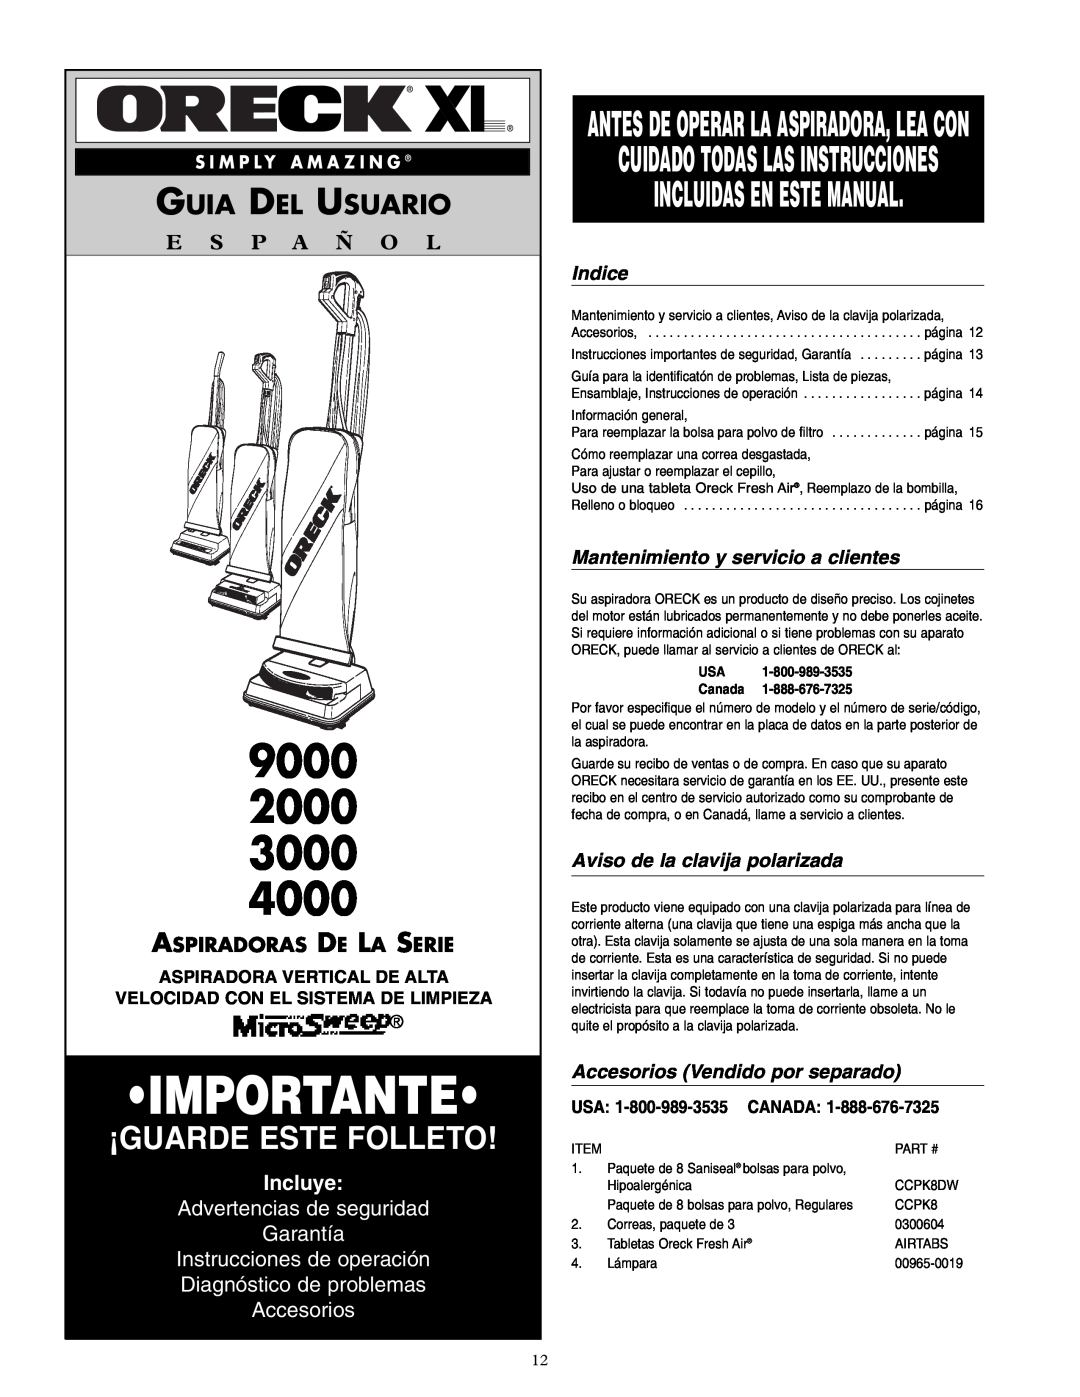 Oreck 4000 Incluidas En Este Manual, Guia Del Usuario, Incluye, Advertencias de seguridad Garantía, Indice, Importante 